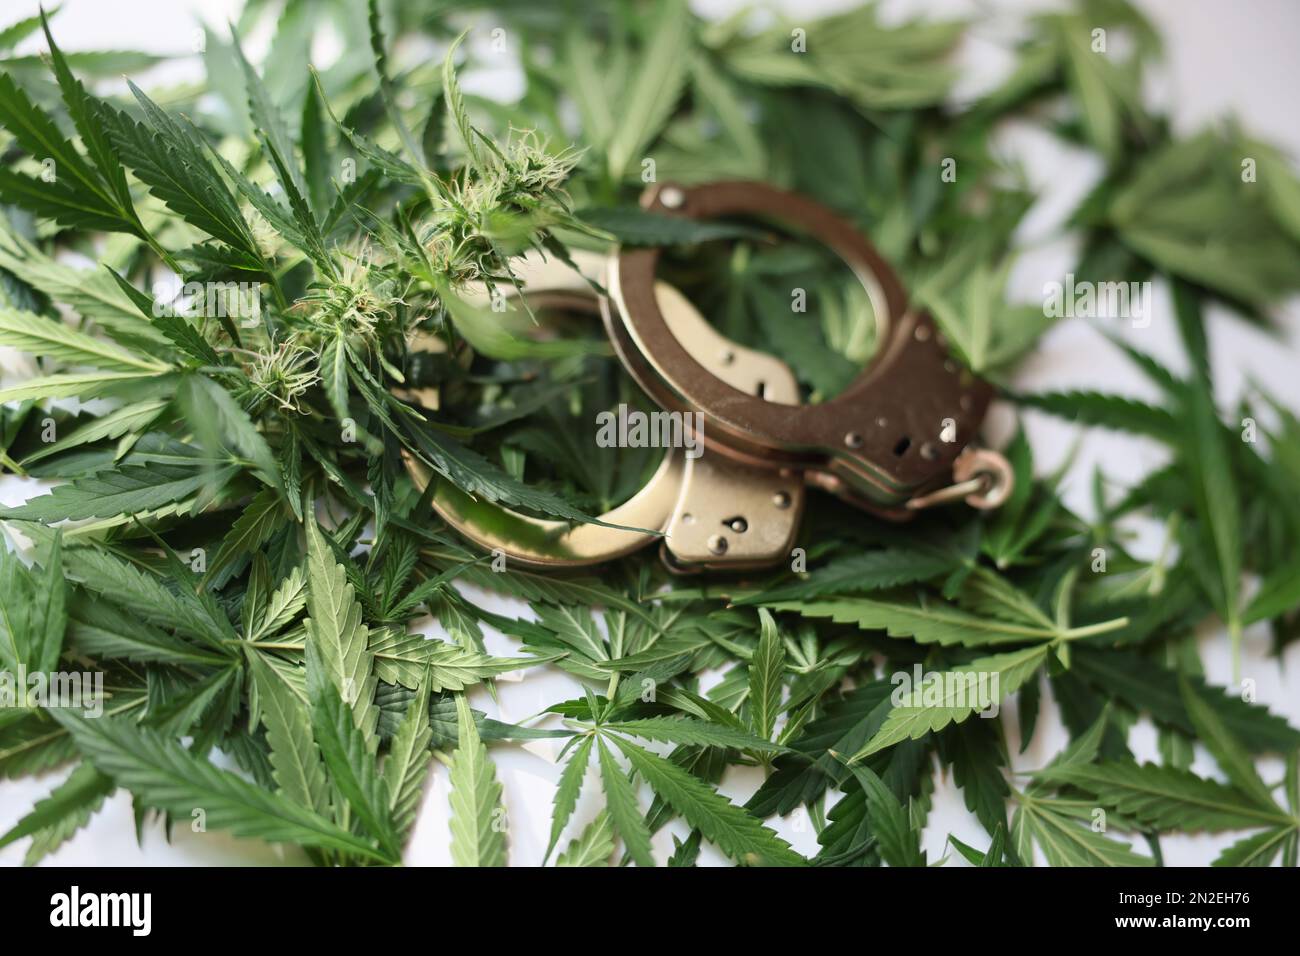 Manette giacenti su foglie verdi di marijuana primo piano Foto Stock